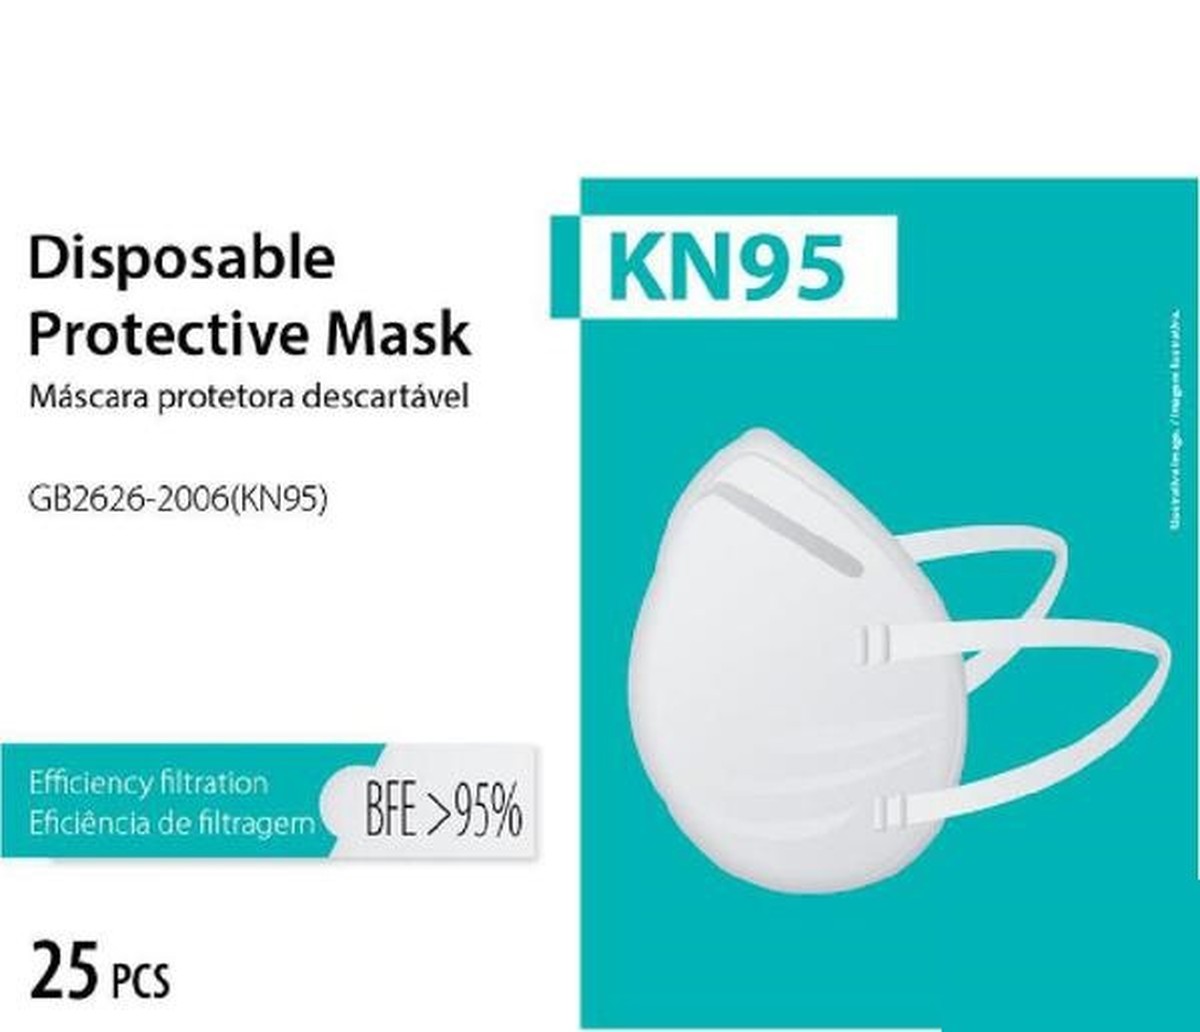 Foto do produto Kit com 25 unid - Máscaras de Proteção KN95 